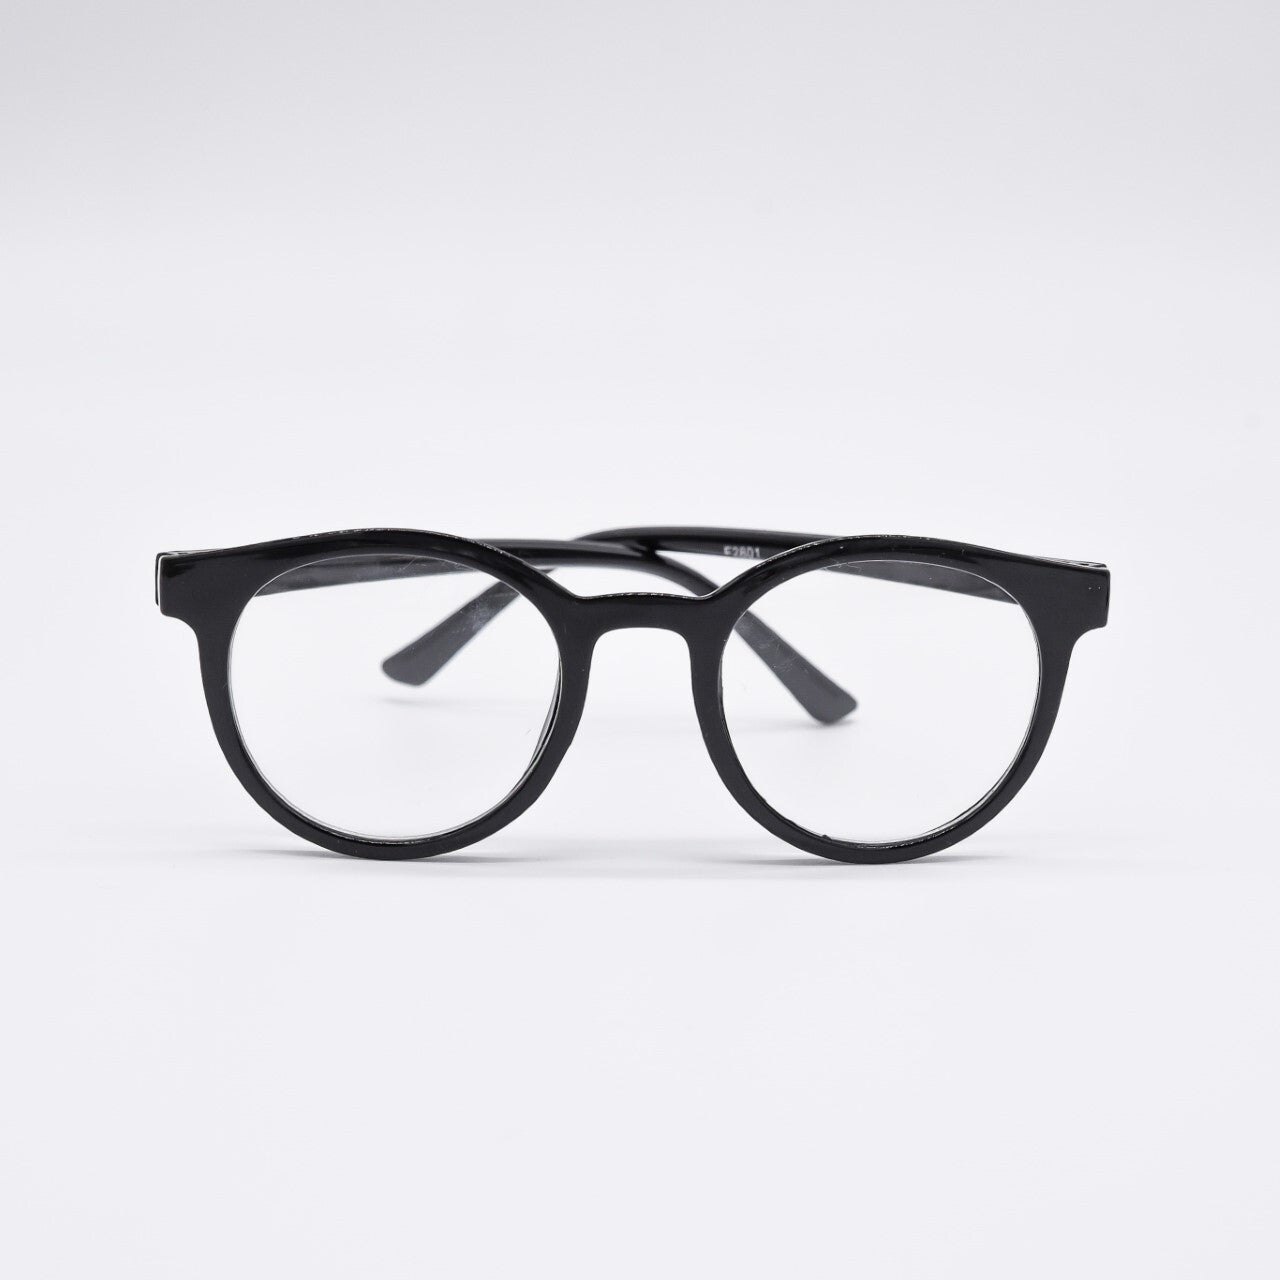 Blue Light Glasses - Black Sunglasses Elle Porte 